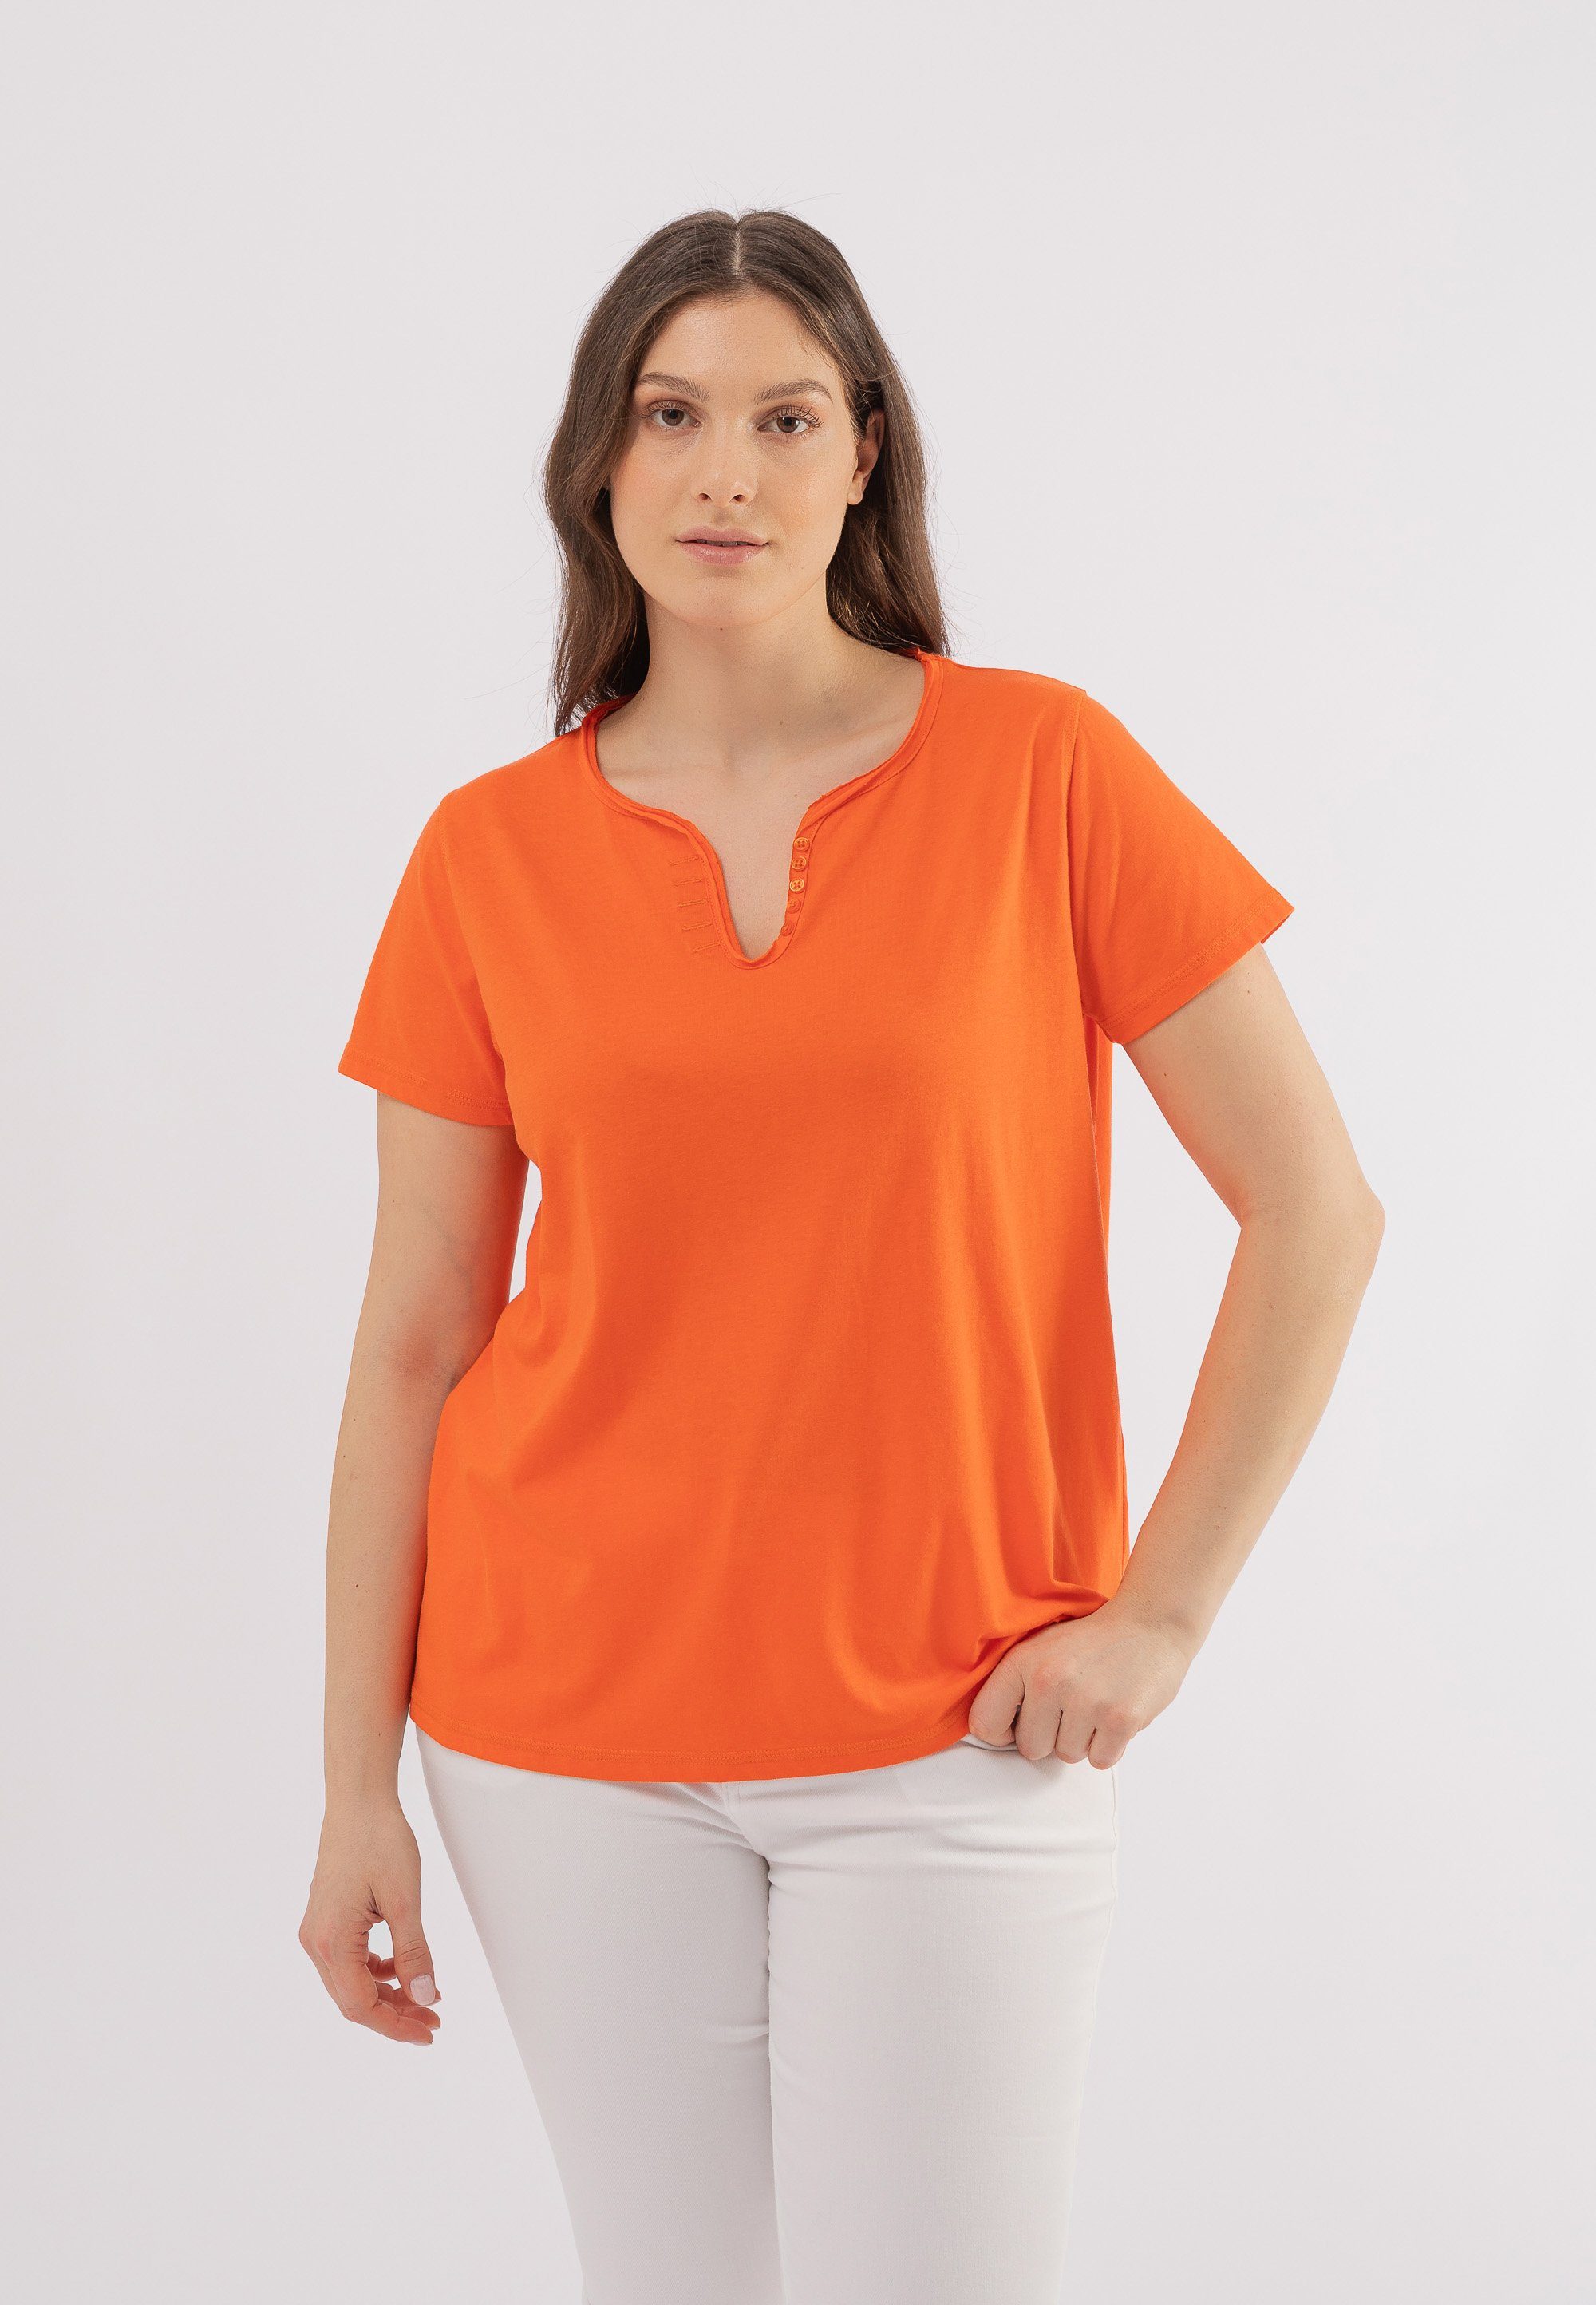 October T-Shirt mit dekorativen Knöpfen orange